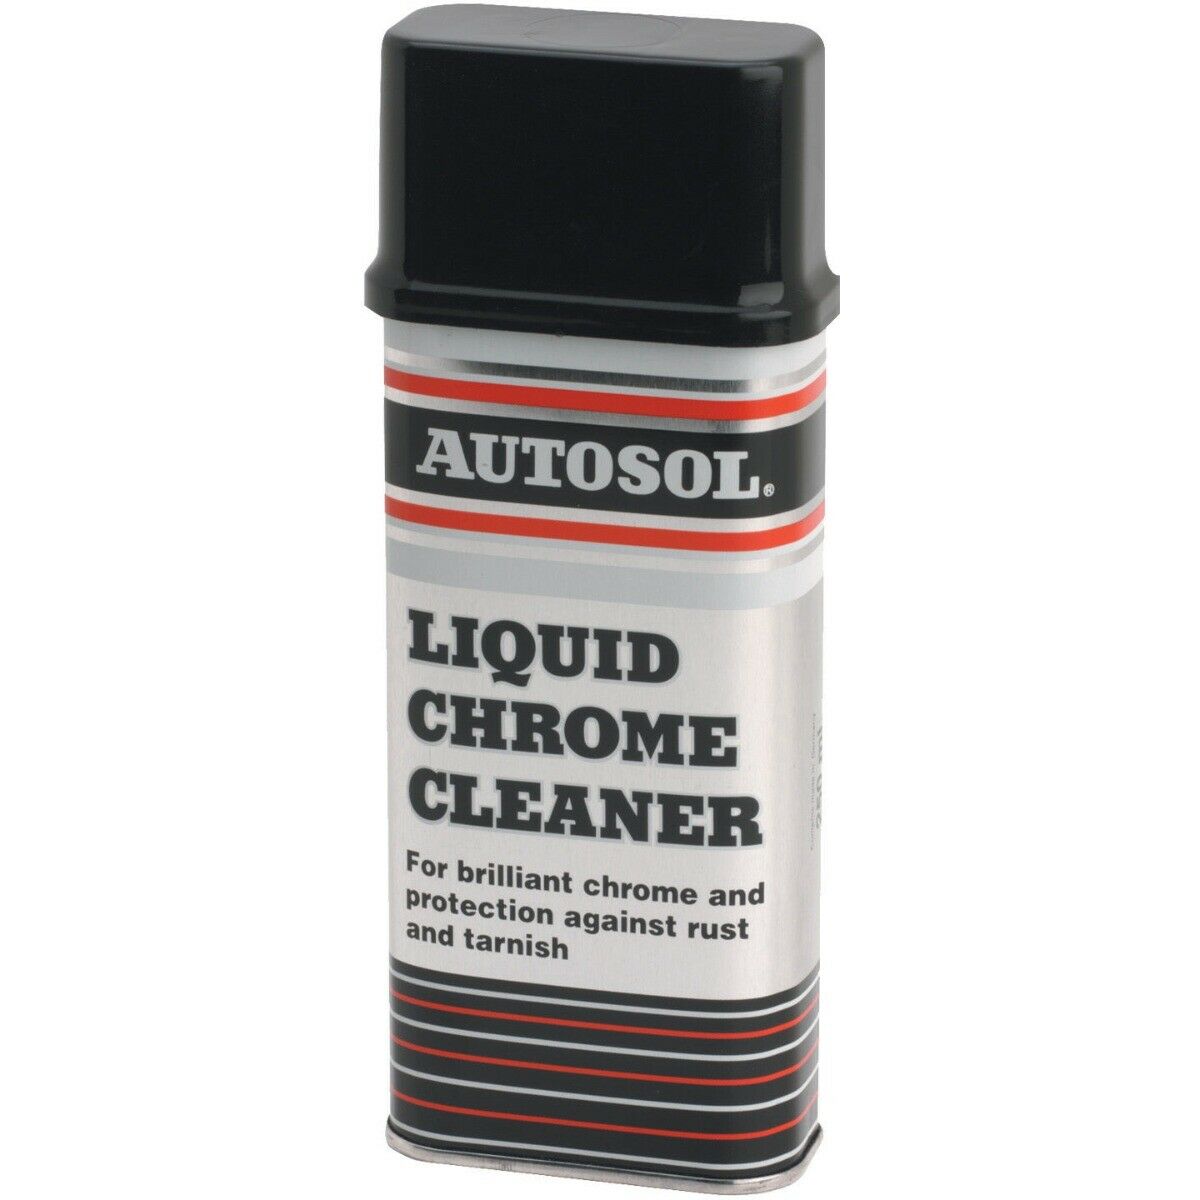 Autosol Metal Polish Liquid. Очиститель хрома. Металл клинер очиститель металла. Очиститель металлических креплений авто. Chrome cleaner